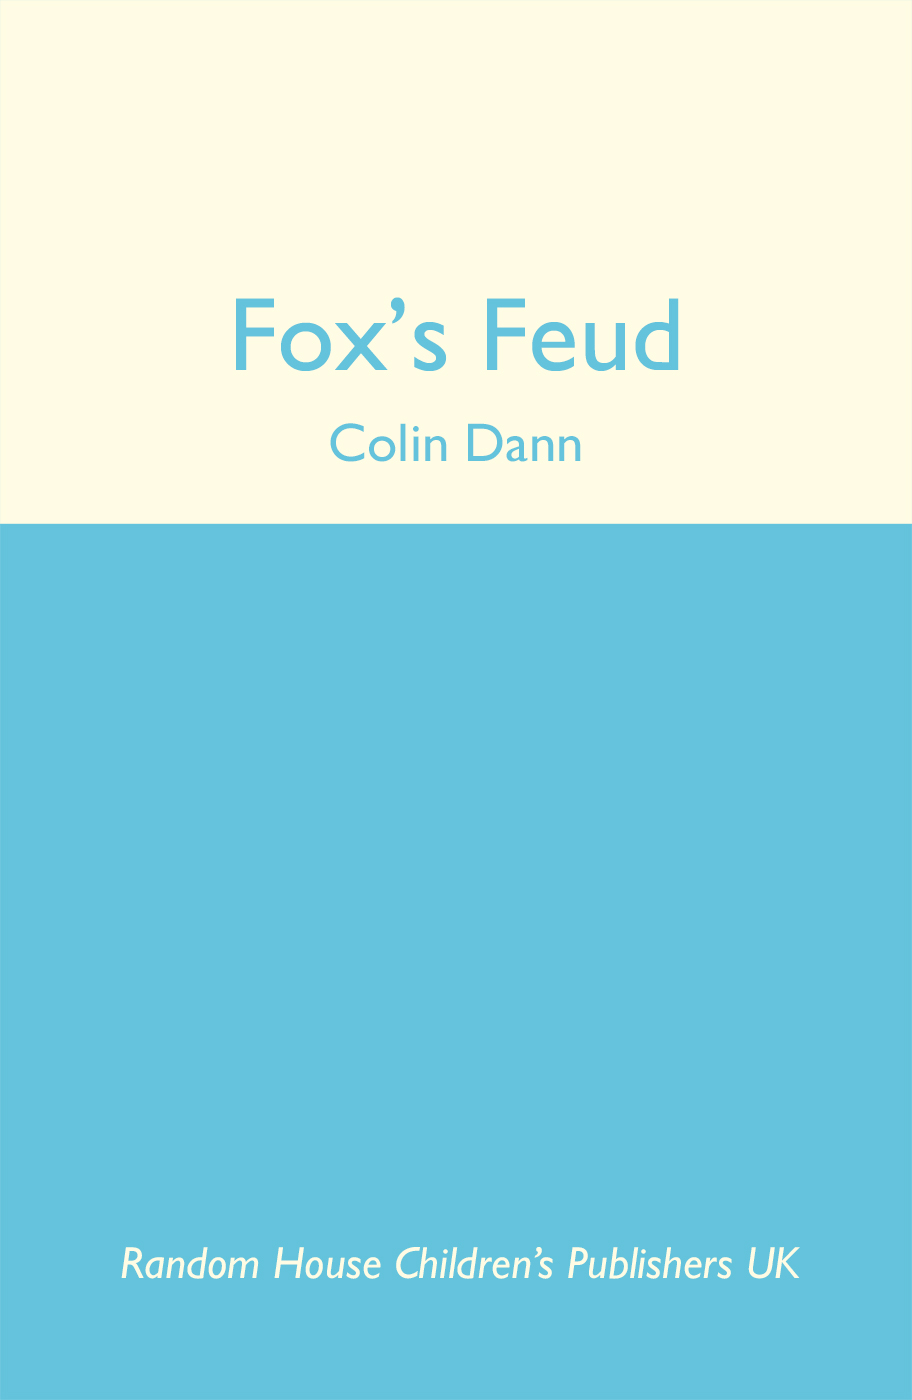 Fox's Feud by Colin Dann